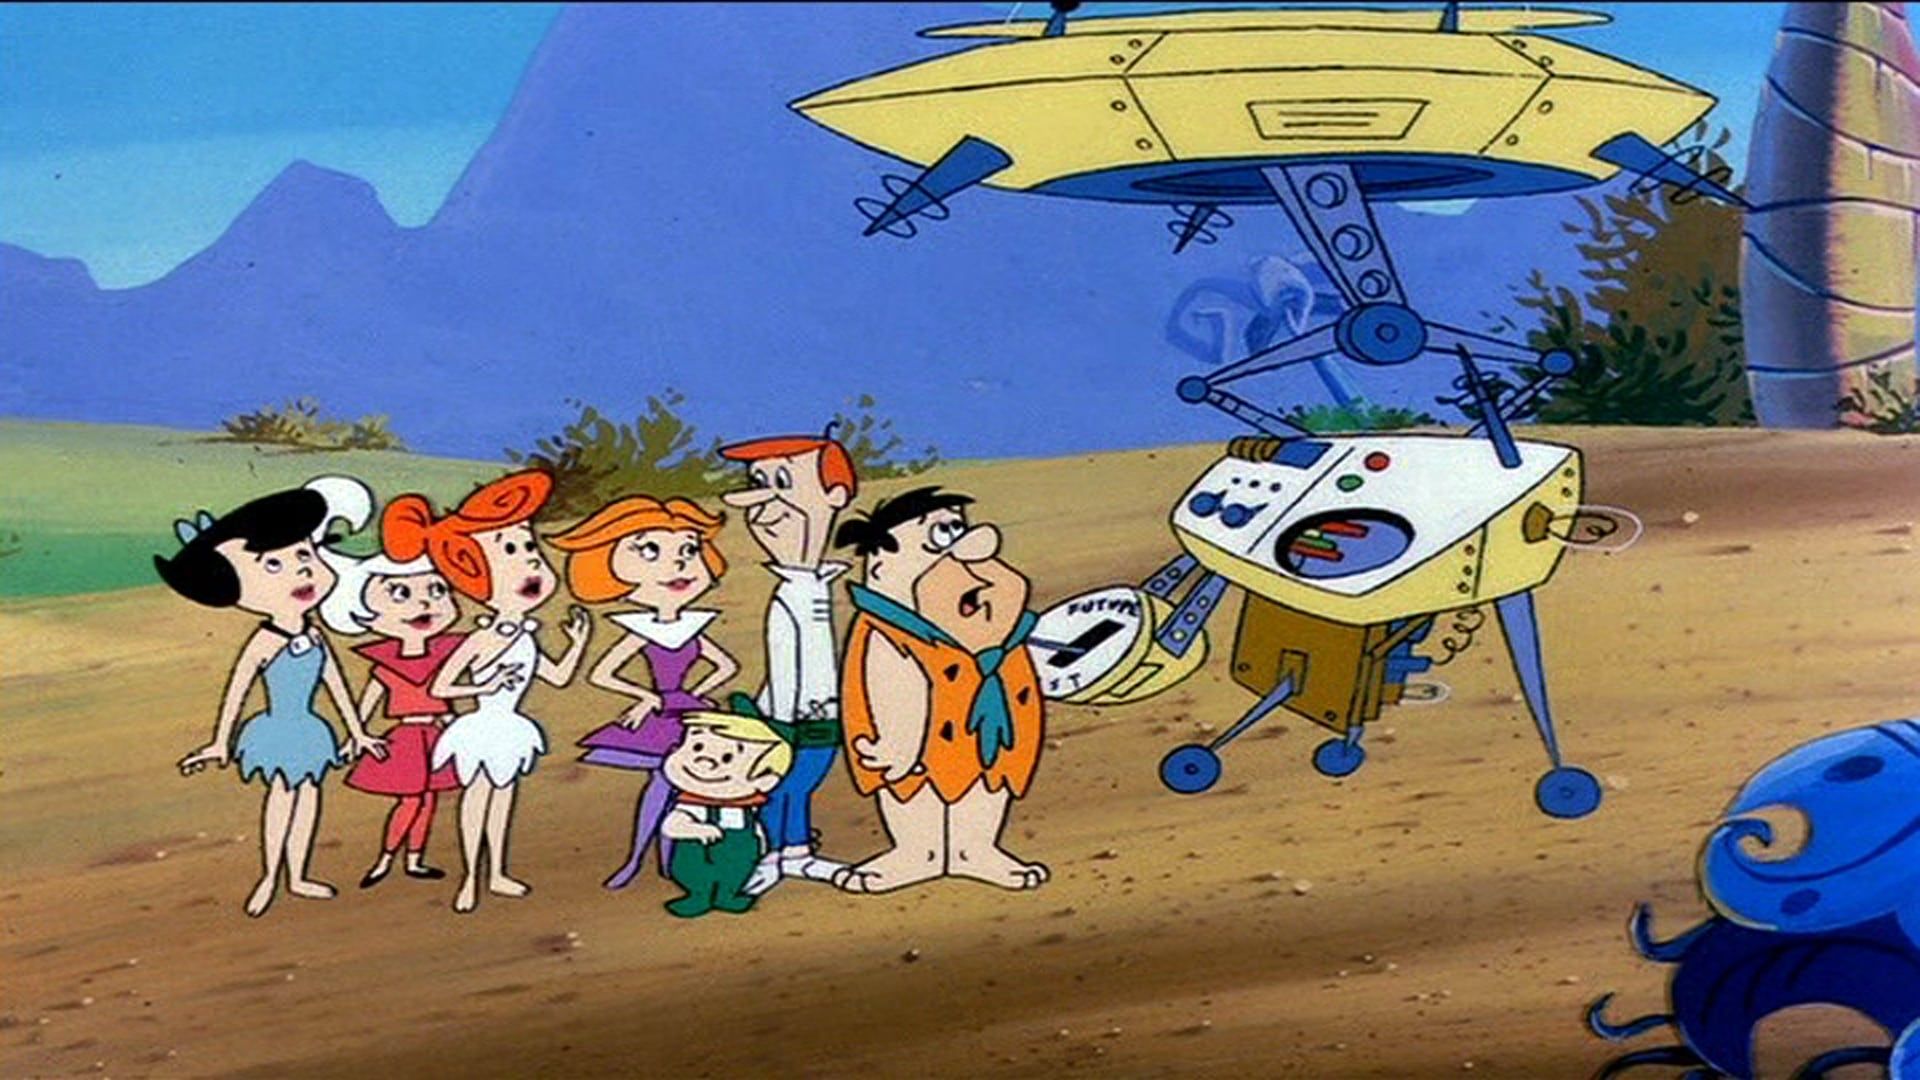 1987's The Jetsons Meet the Flintstones